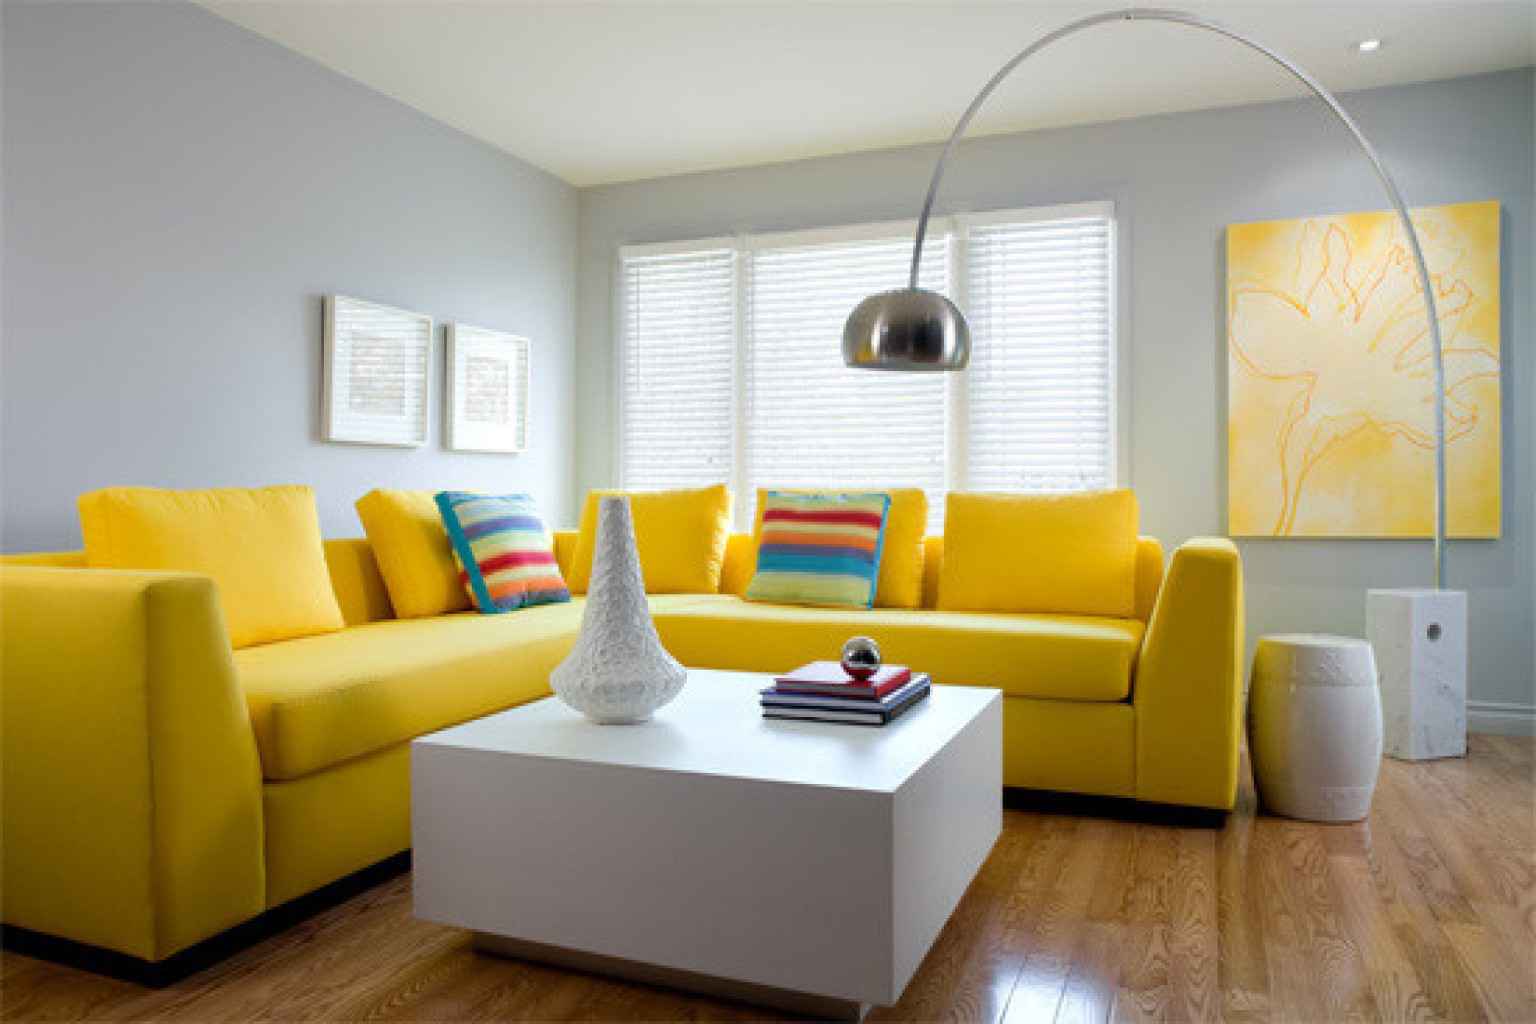 دکوراسیون داخلی منزل با رنگ زرد